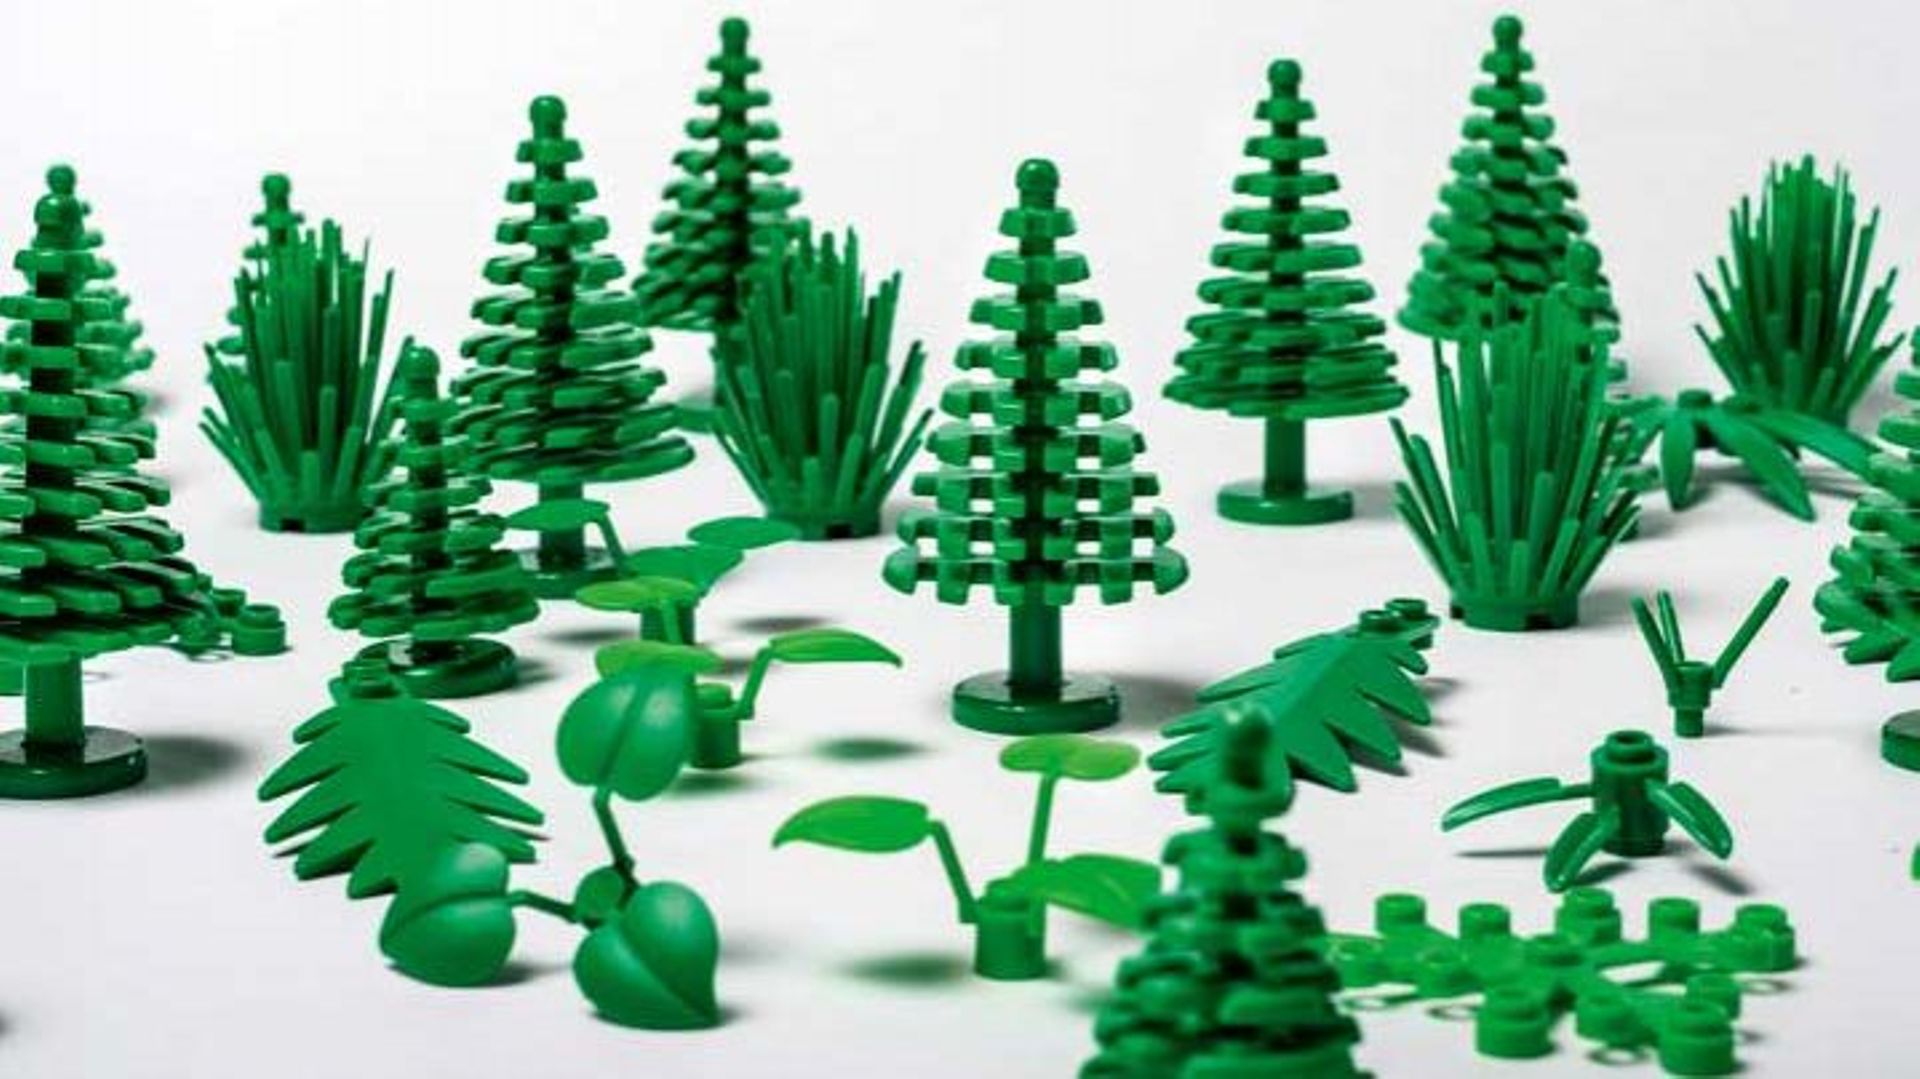 Bientôt des pièces Lego en plastique d'origine végétale